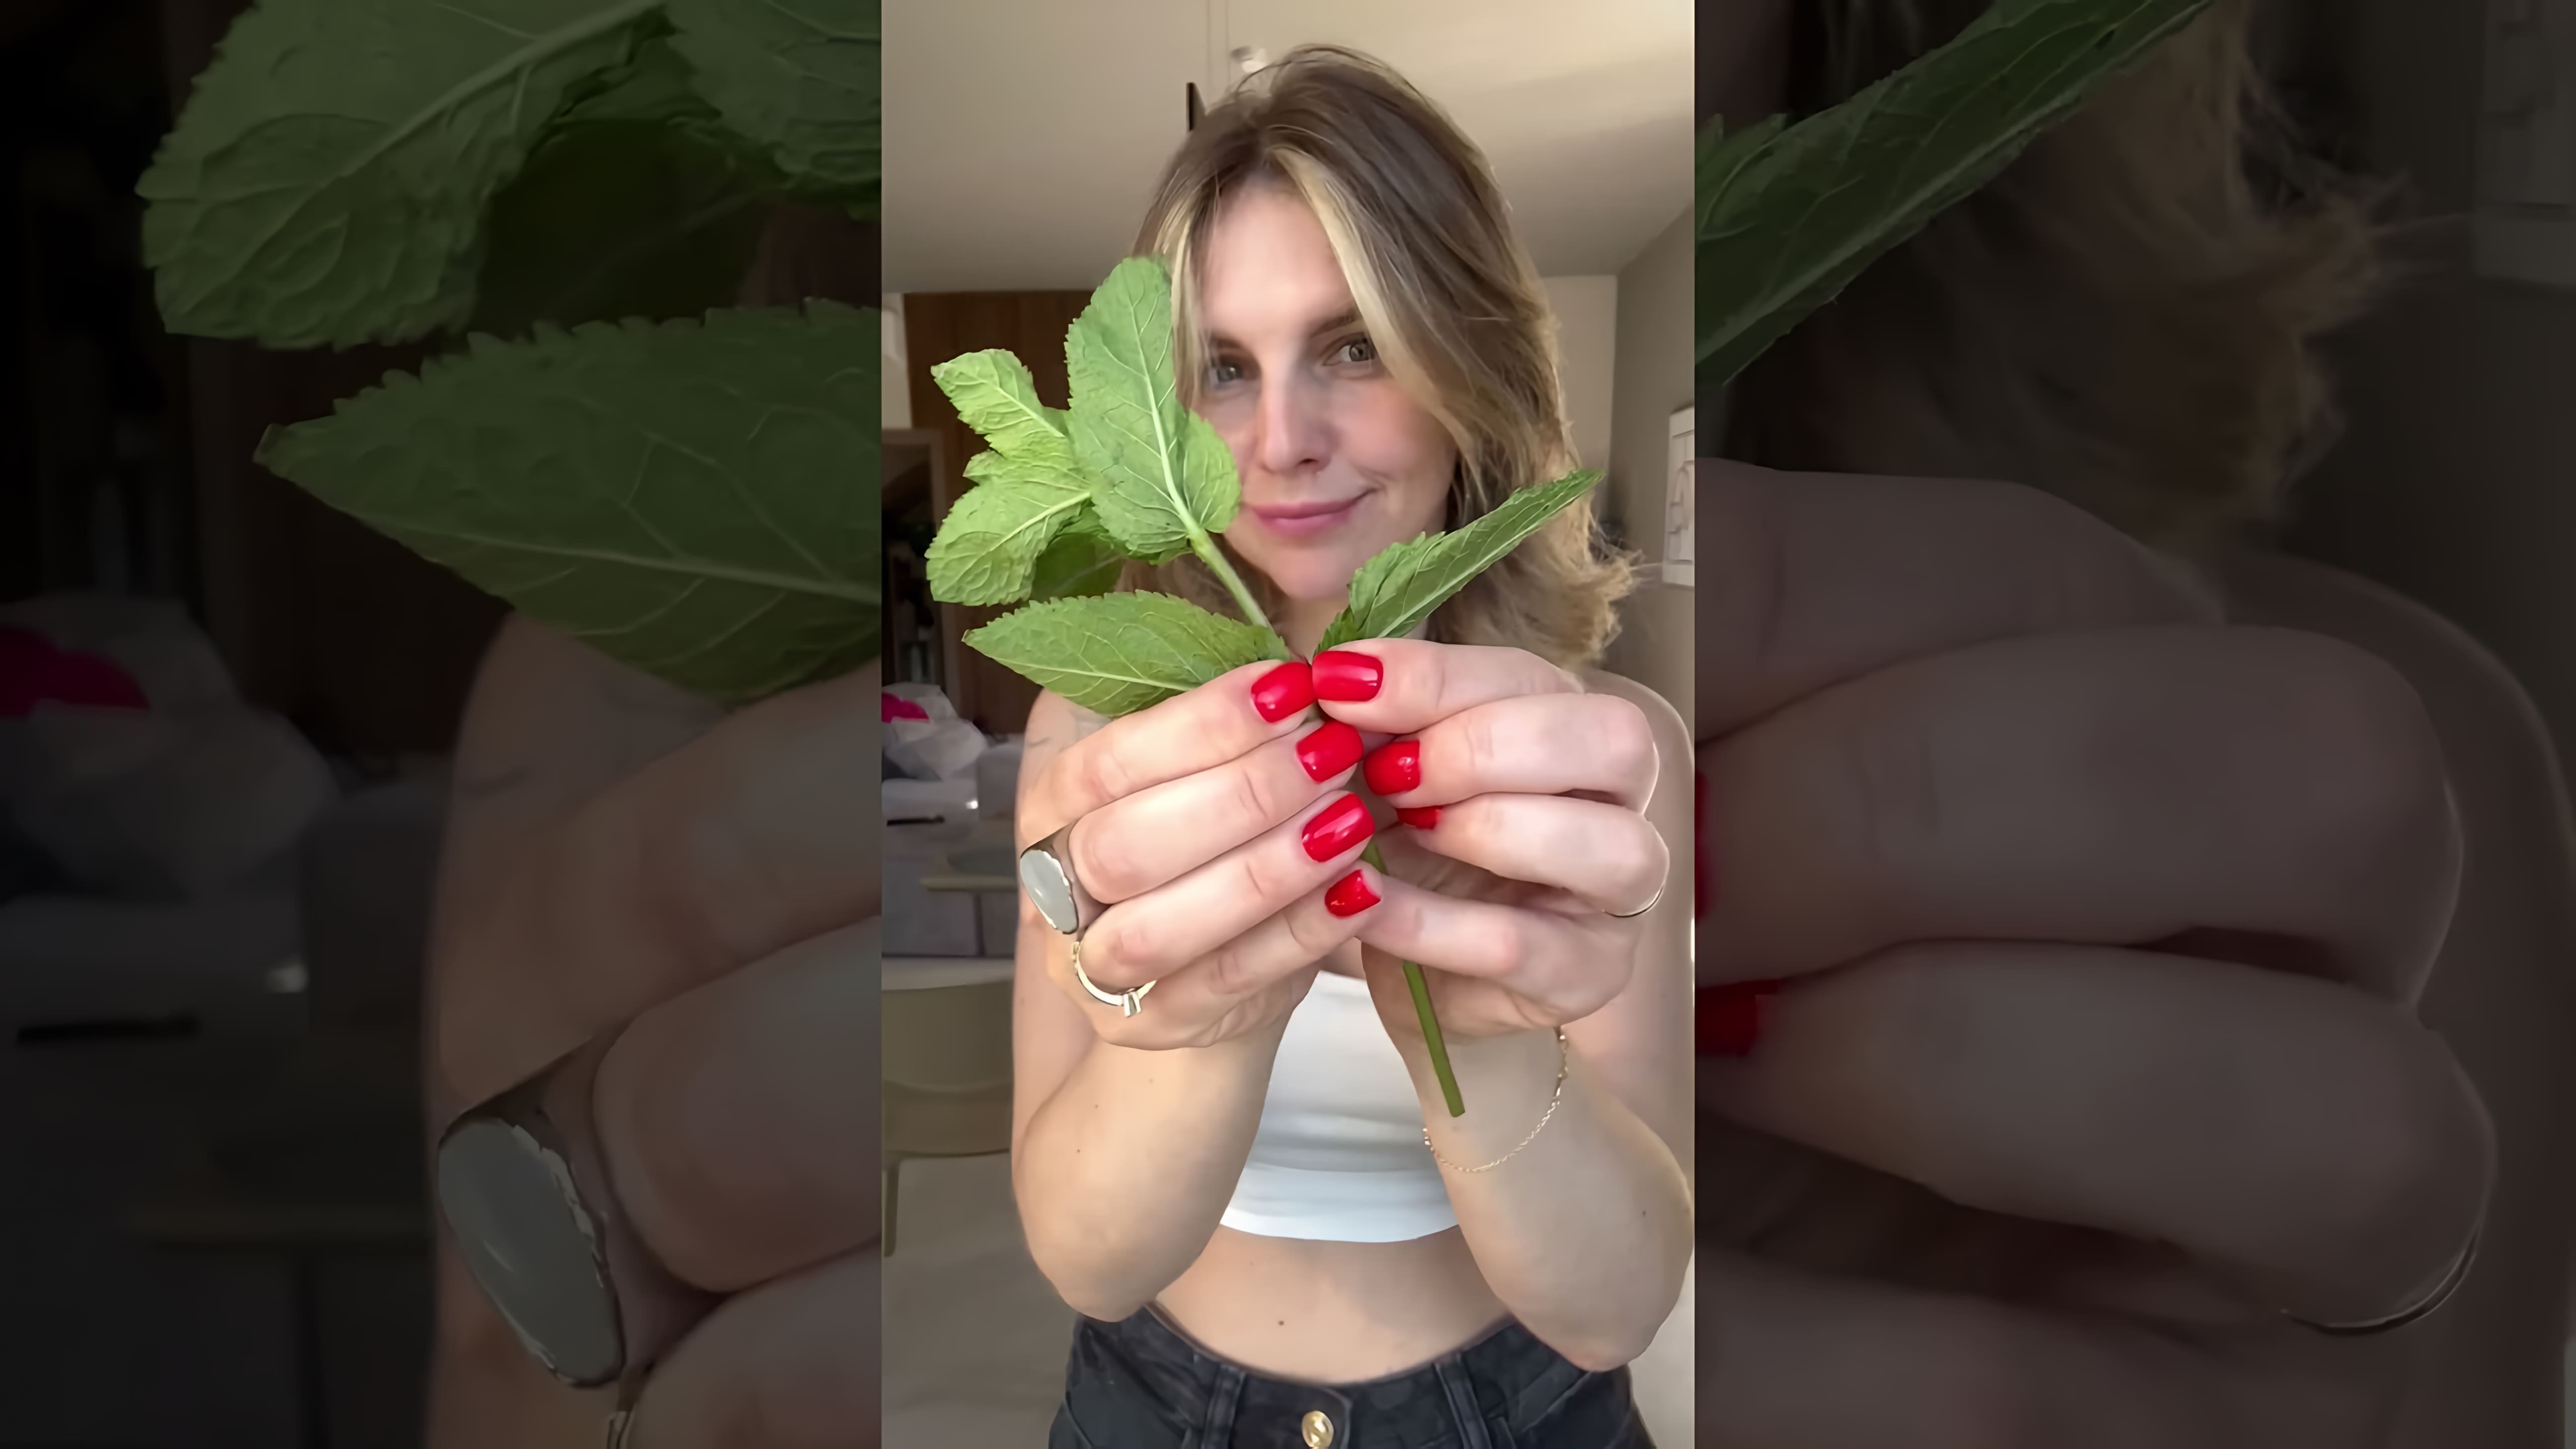 В этом видео рассказывается о том, что помидоры и огурцы не следует класть в один салат, так как помидоры создают кислую среду в организме, а огурцы отщелачивают